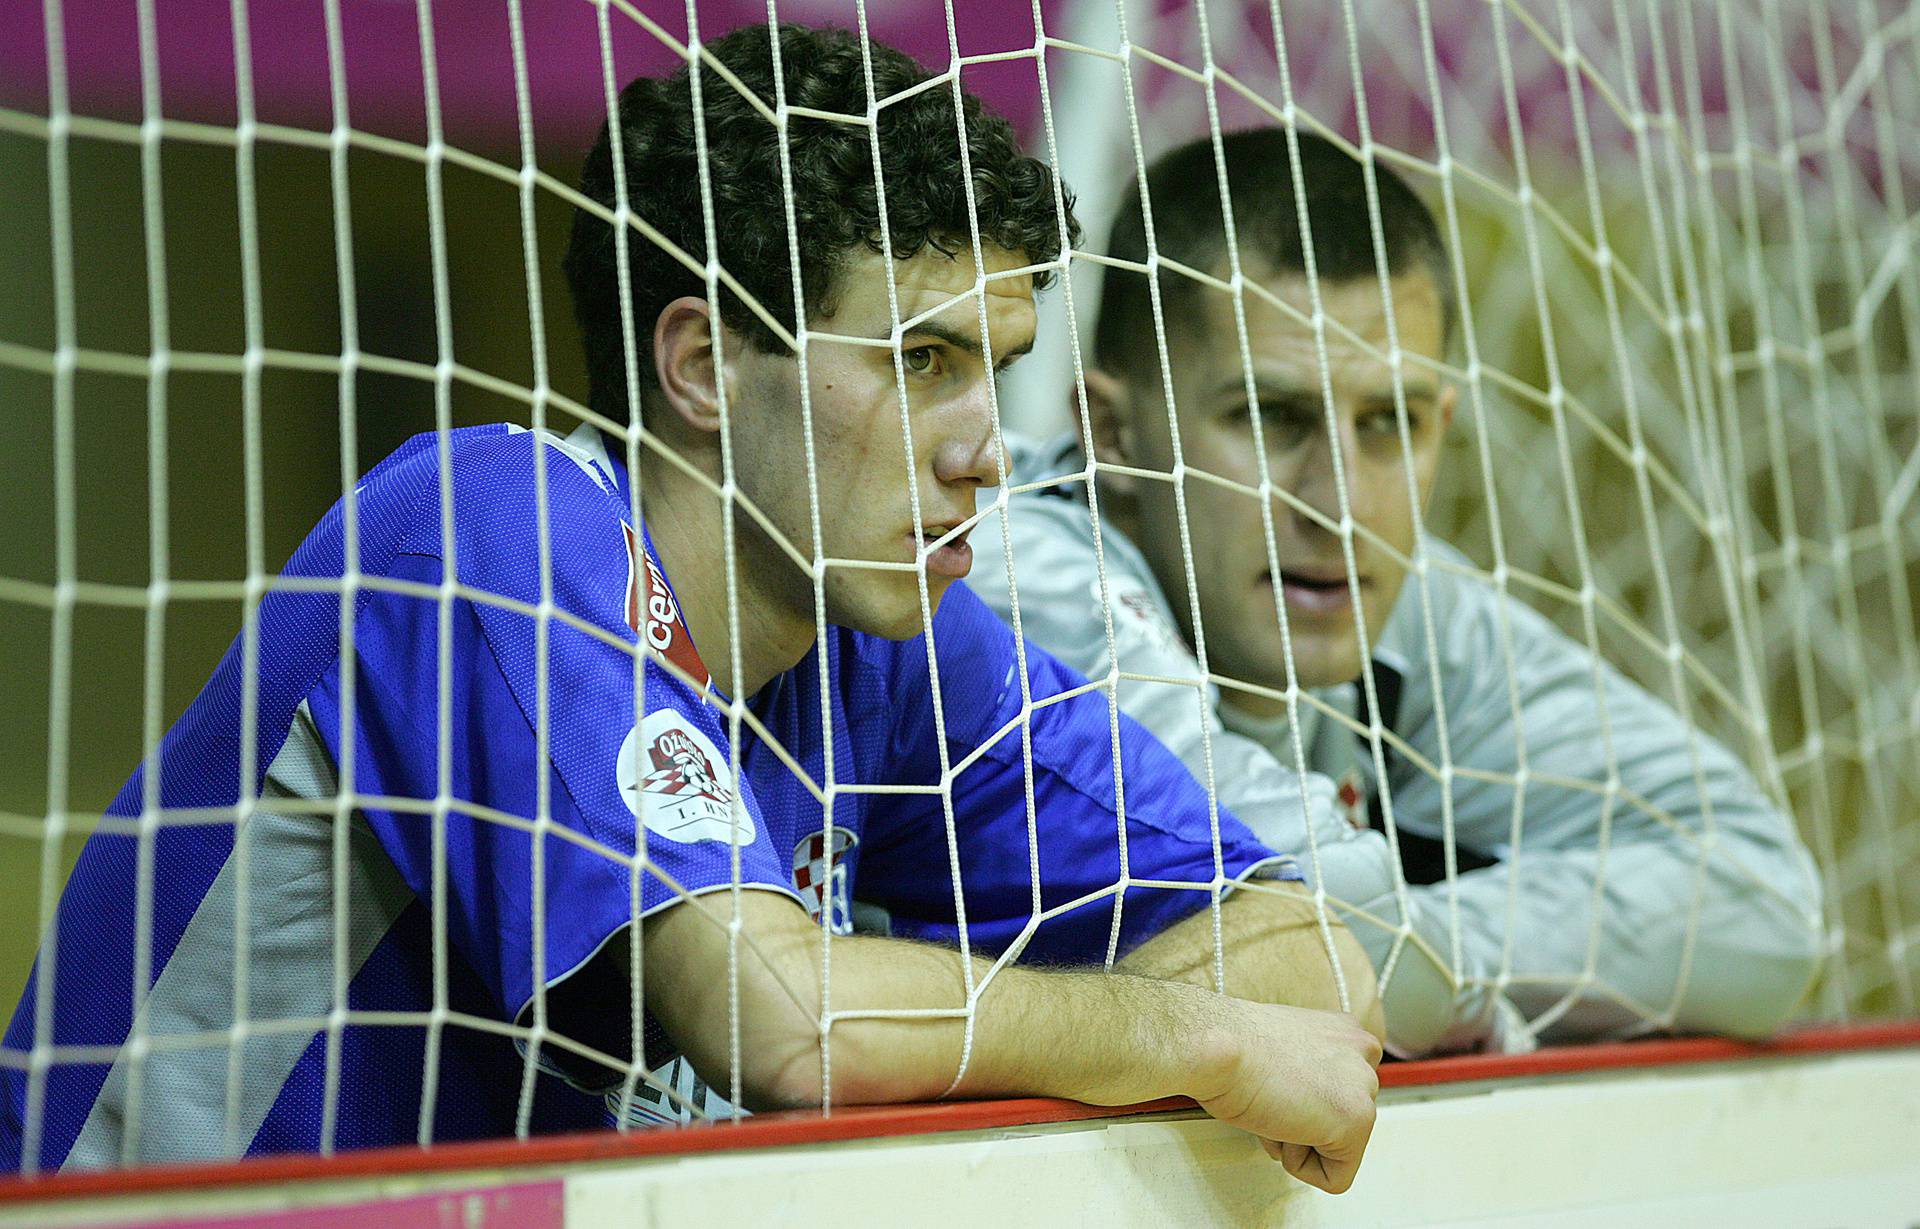 ARHIVA - Zagrebu naslov dvoranskog prvaka Hrvatske u sezoni 2005./06.